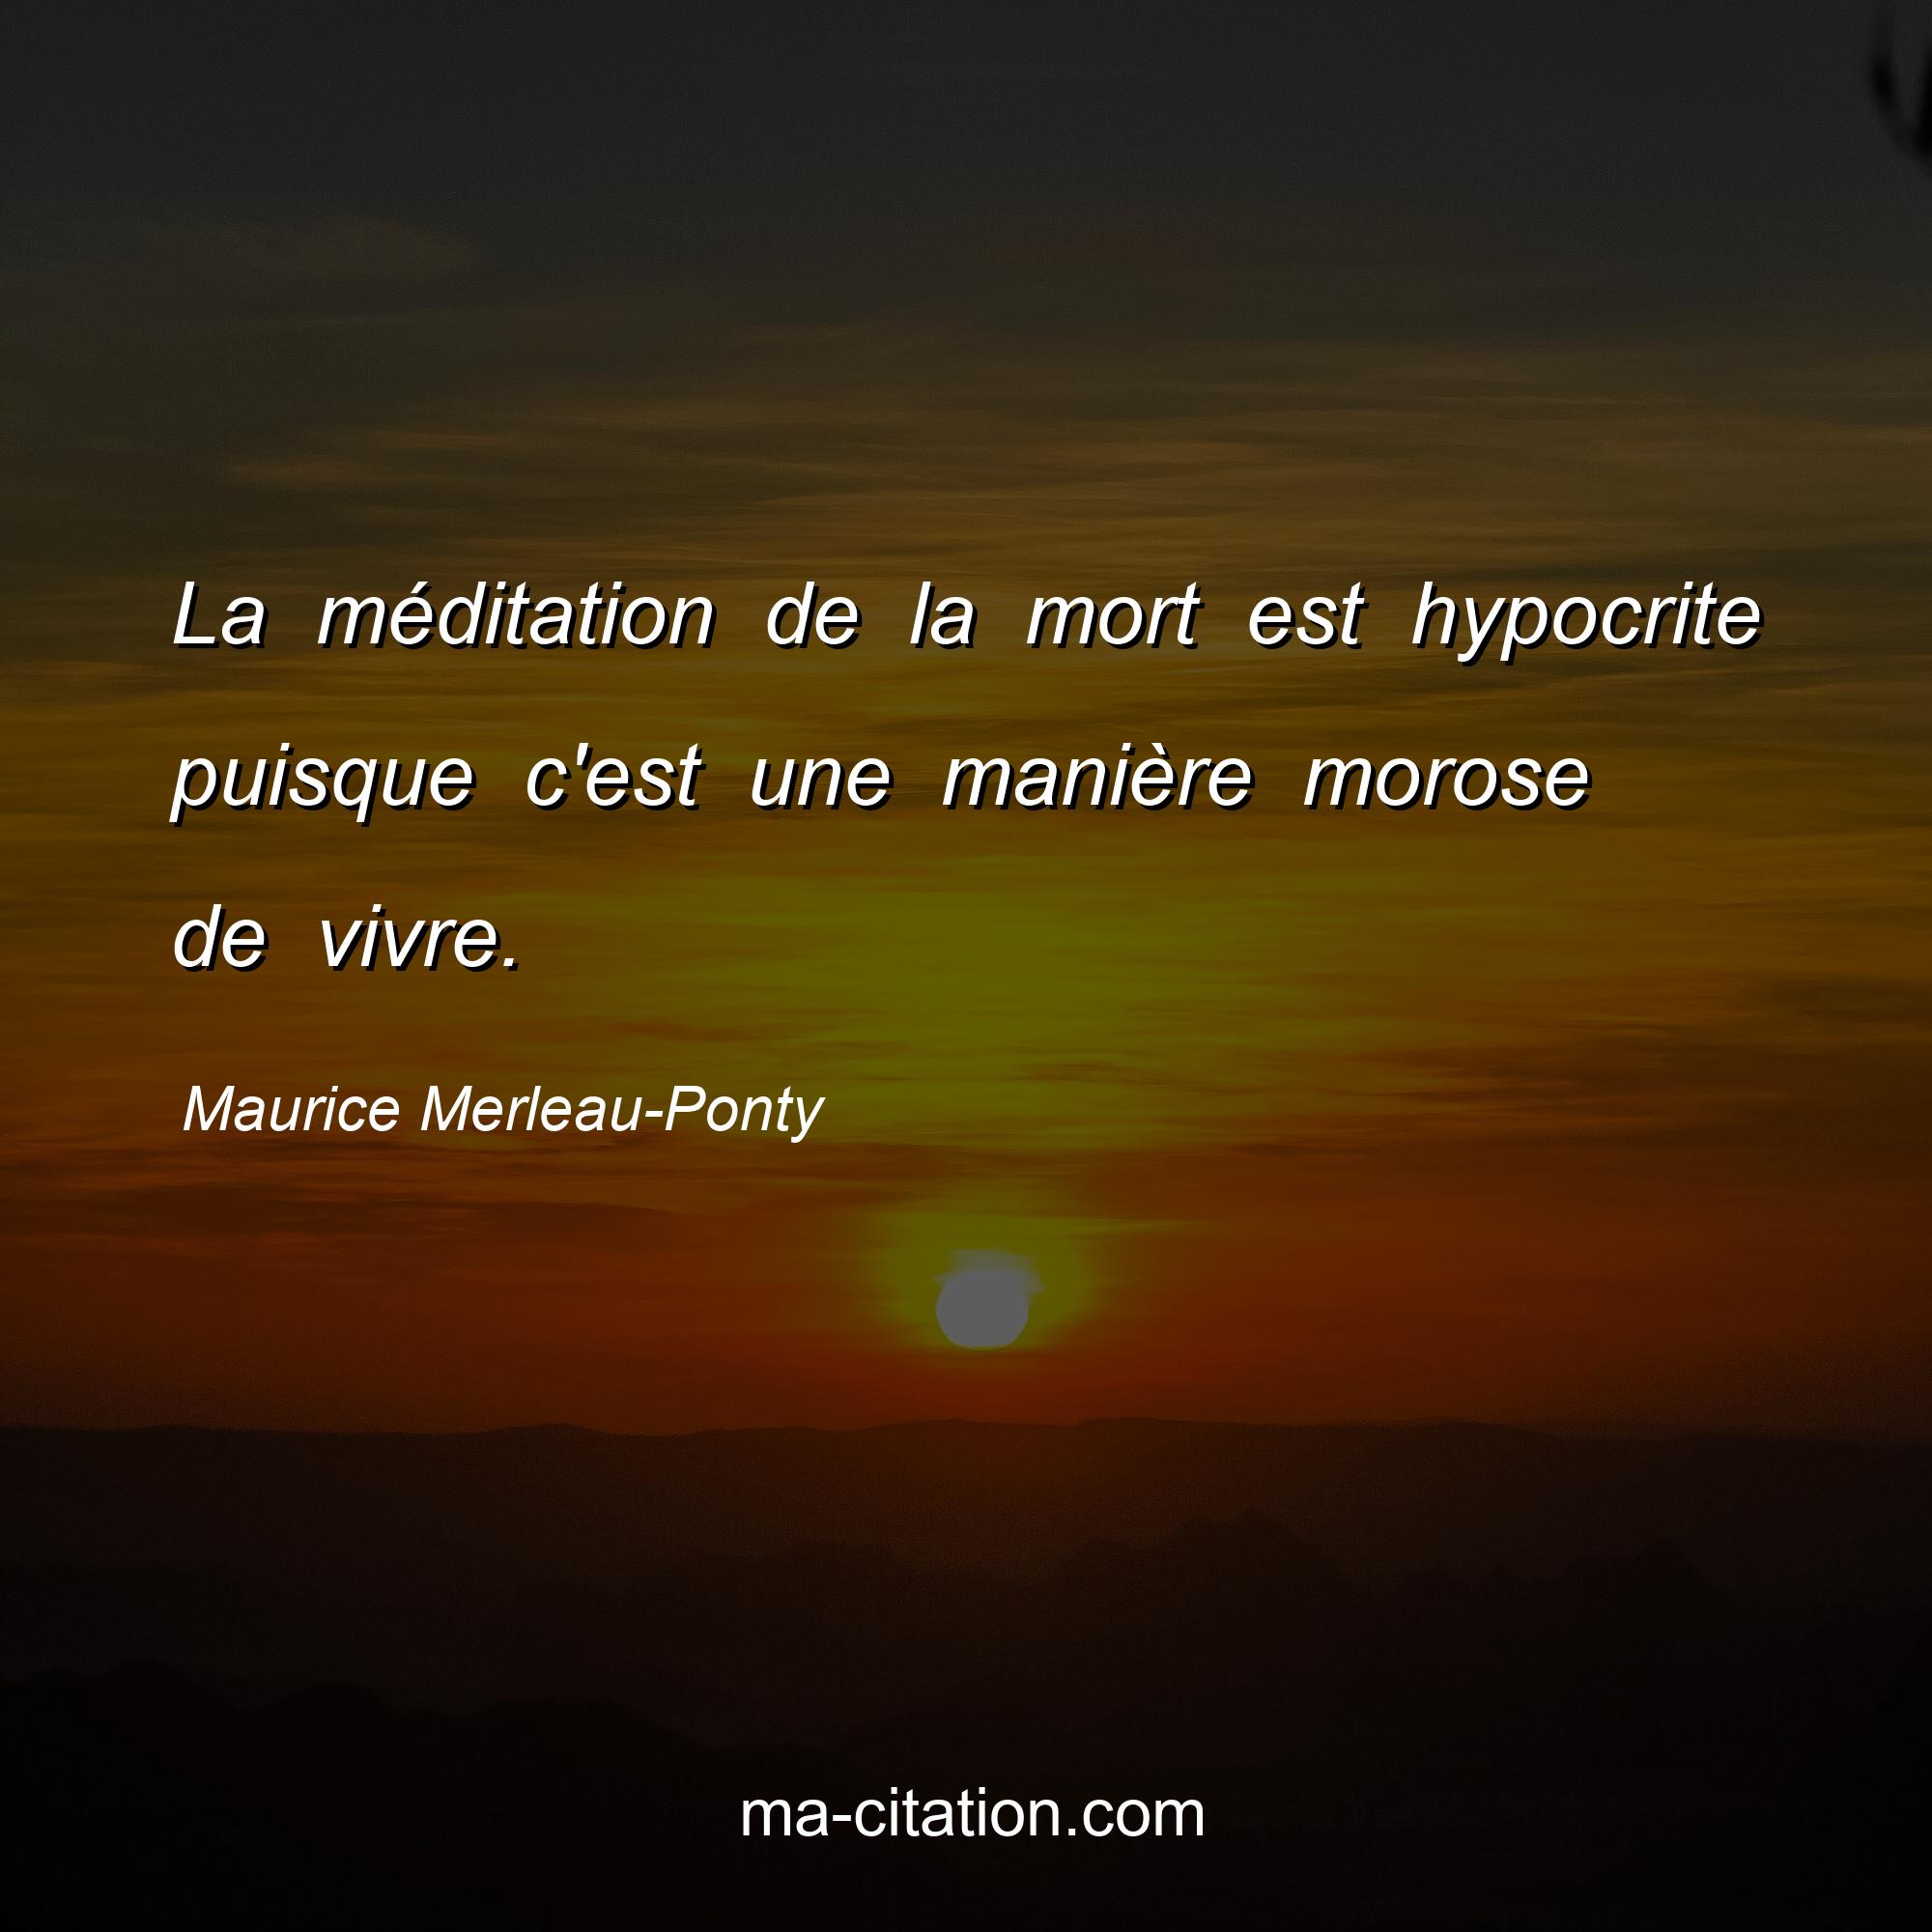 Maurice Merleau-Ponty : La méditation de la mort est hypocrite puisque c'est une manière morose de vivre.